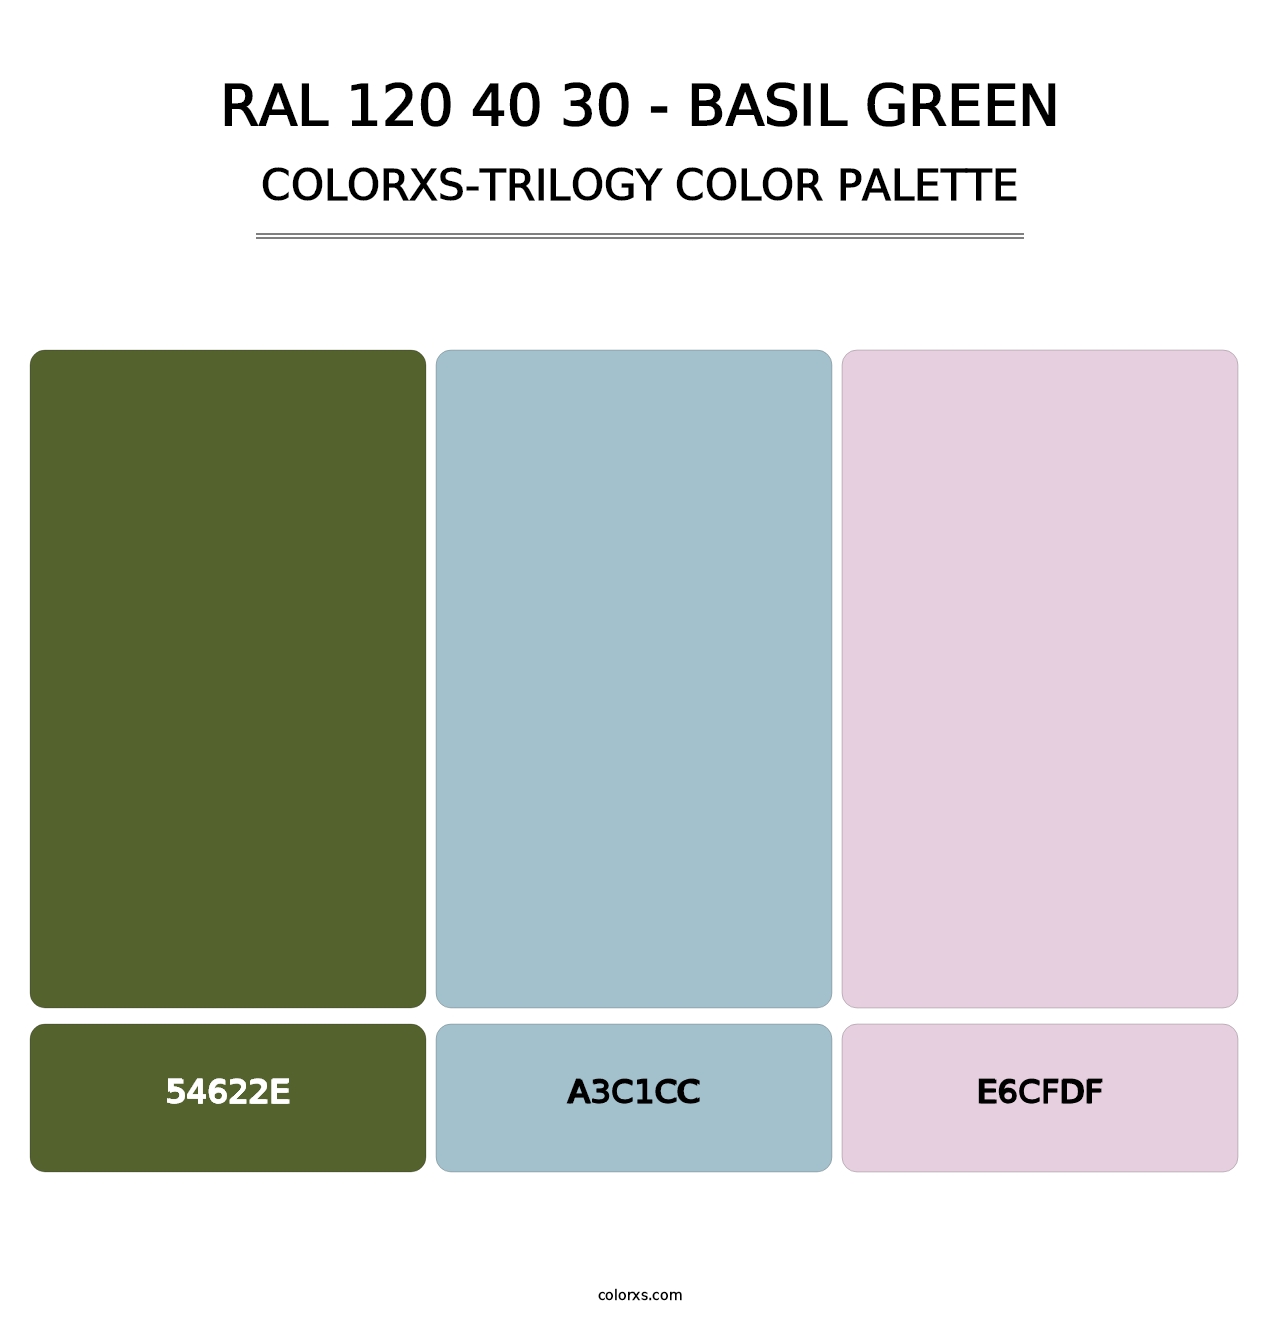 RAL 120 40 30 - Basil Green - Colorxs Trilogy Palette